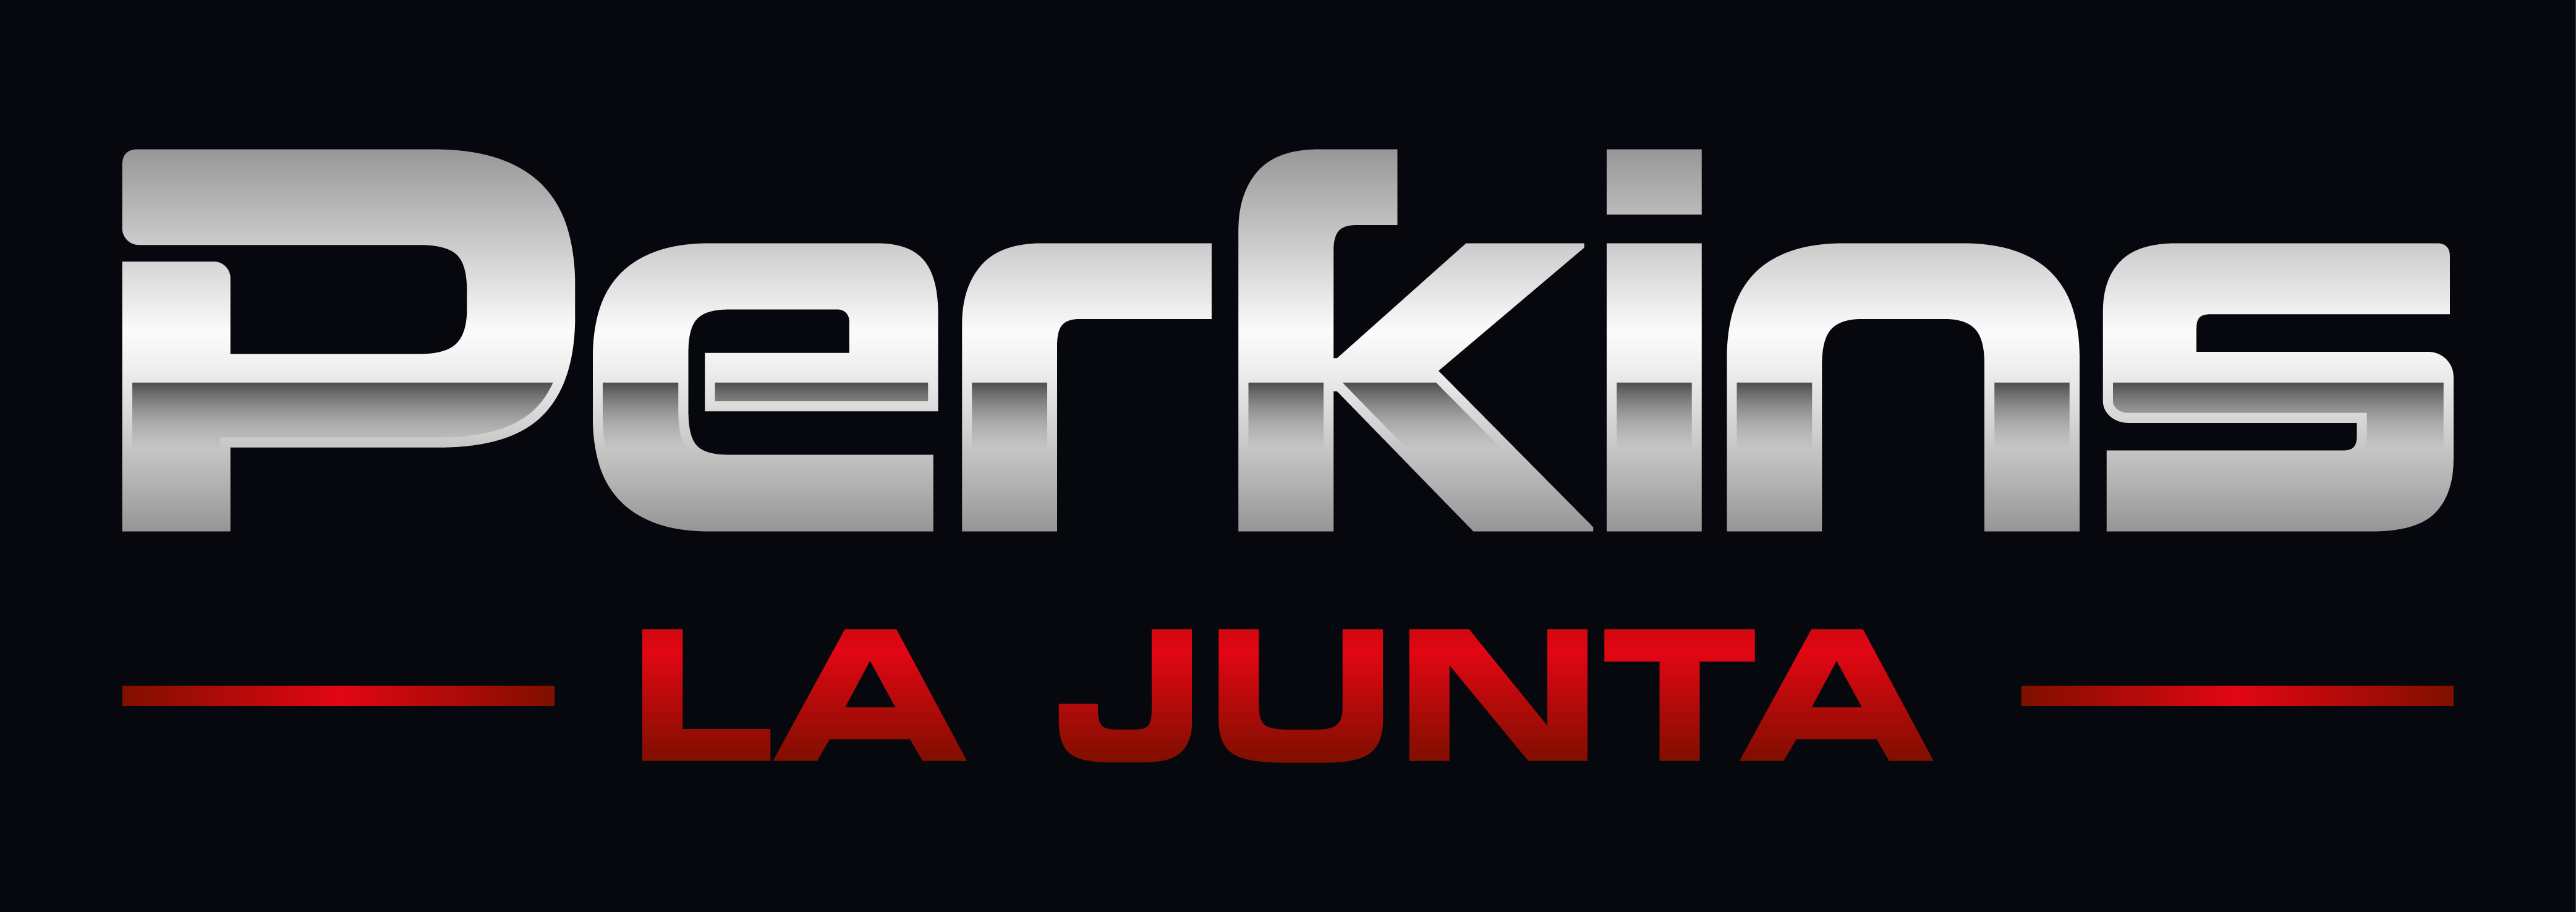 Perkins La Junta